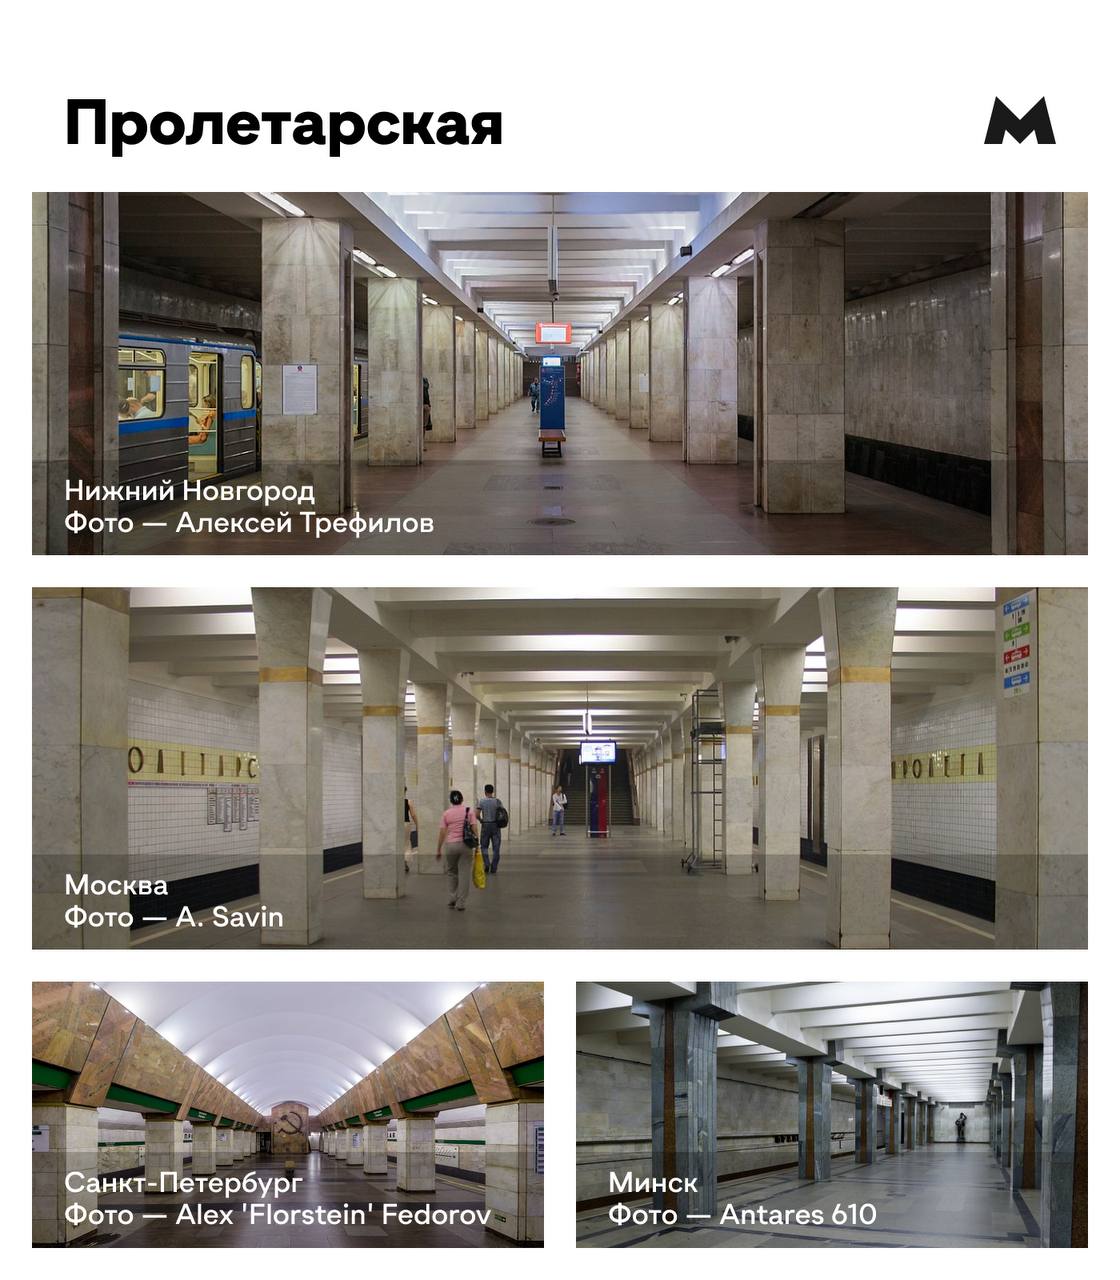 метро московская печать